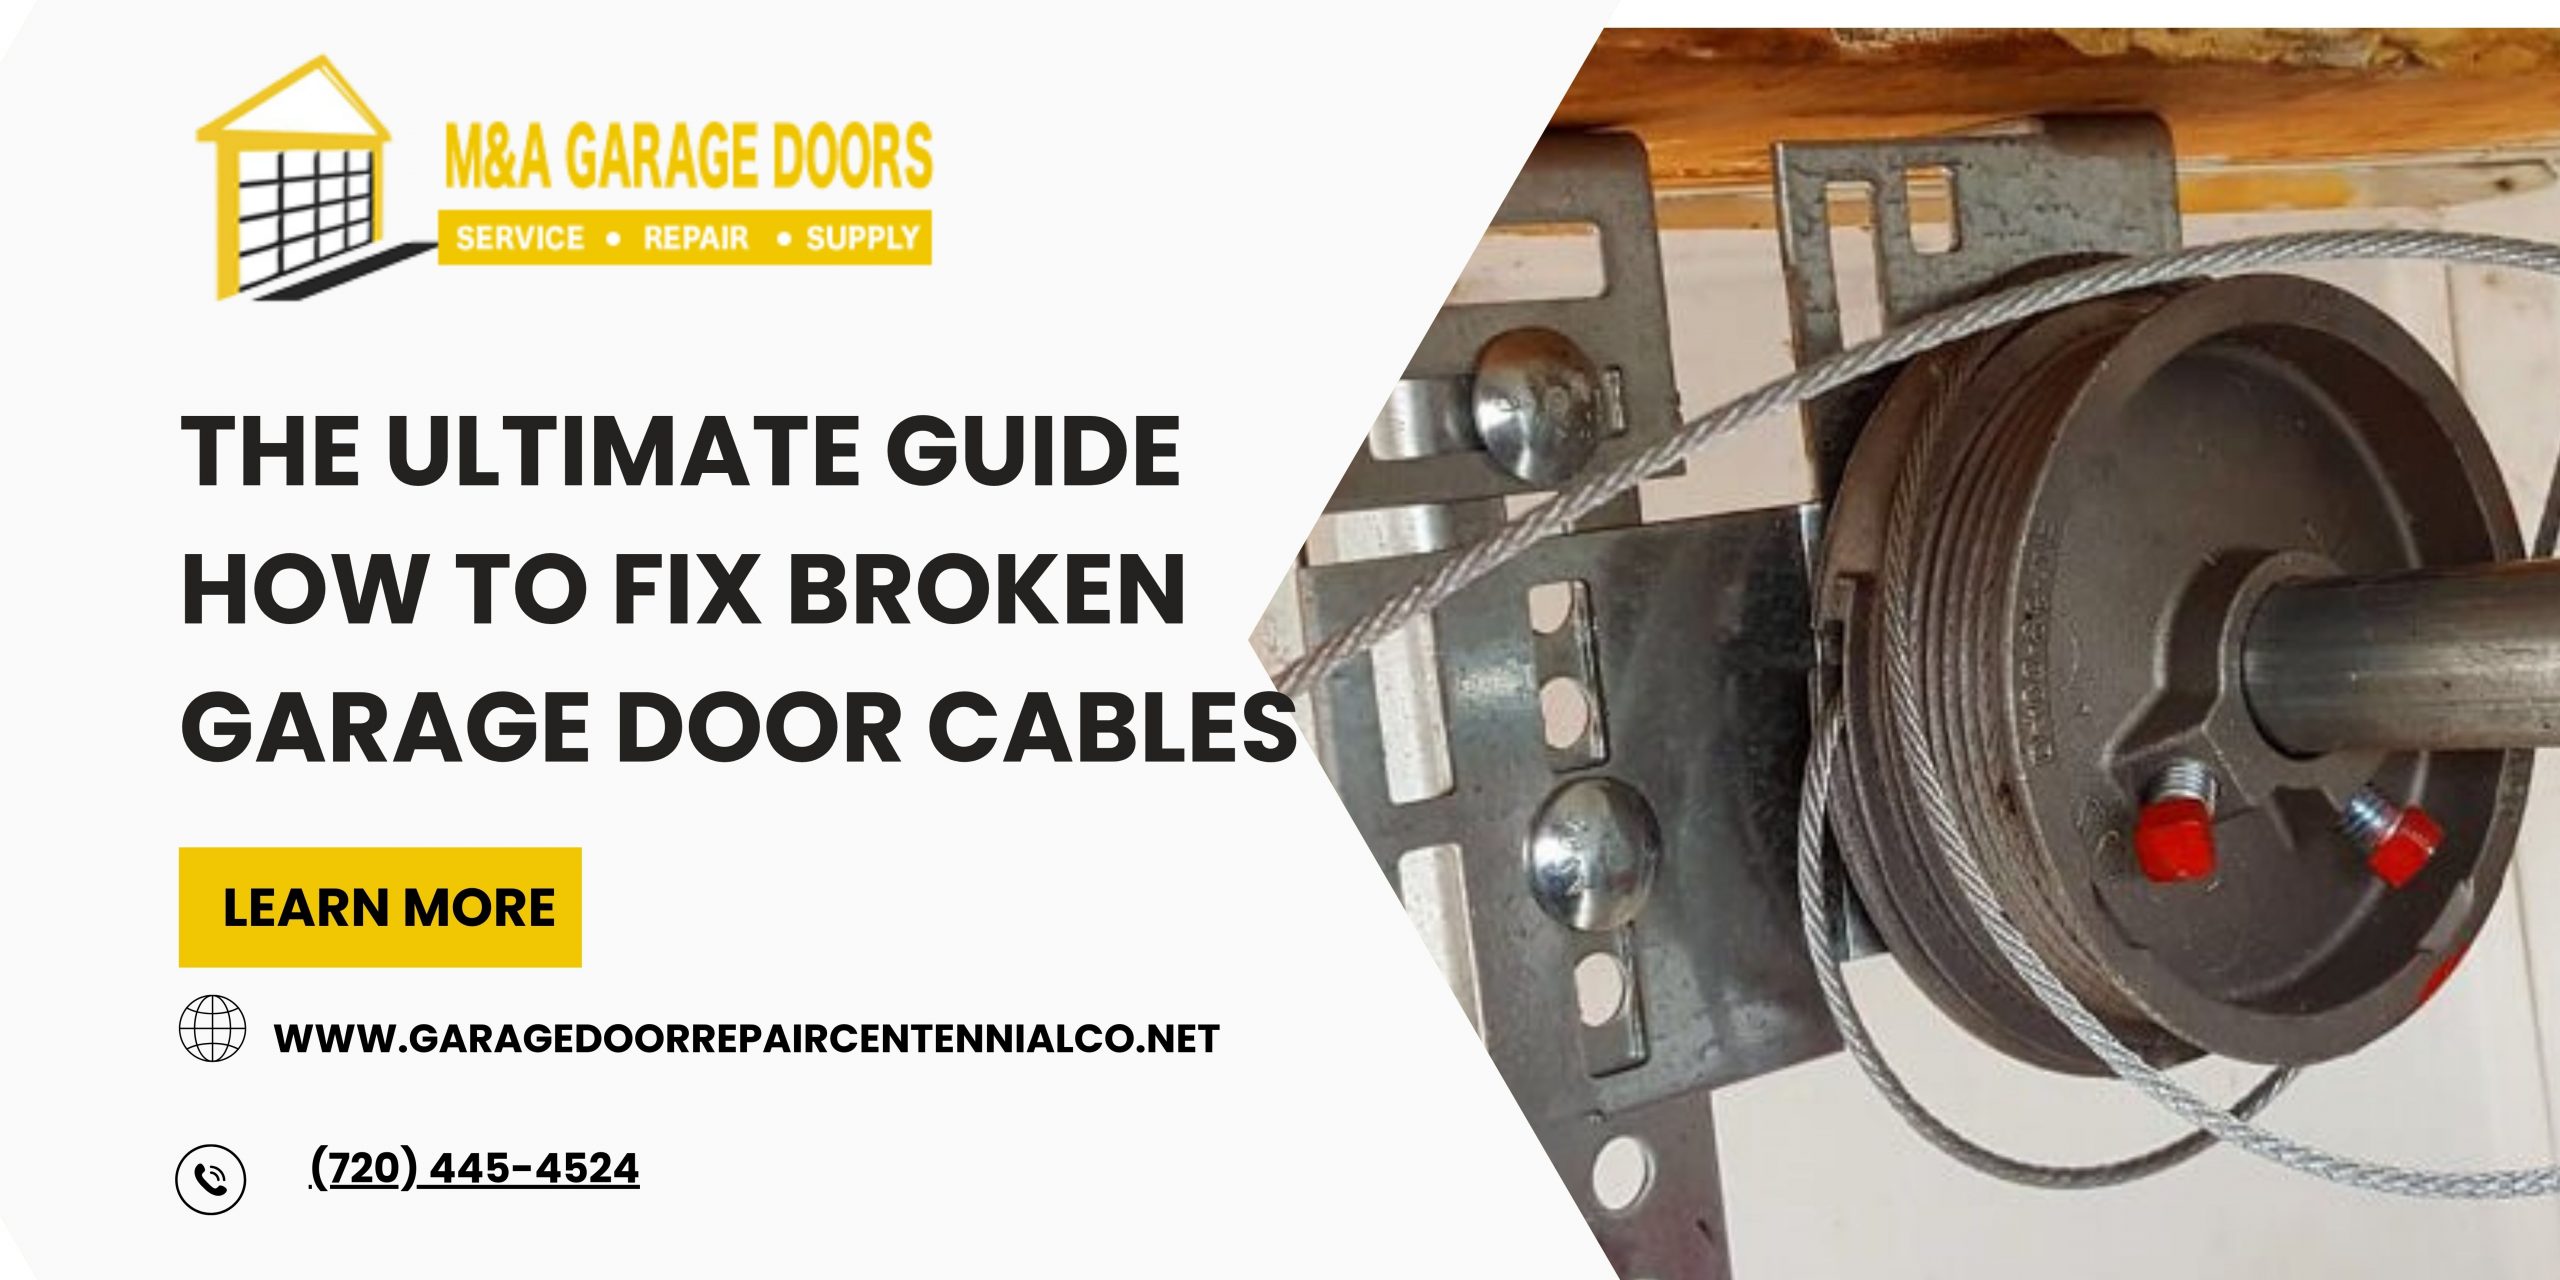 The Ultimate Guide How to Fix Broken Garage Door Cables